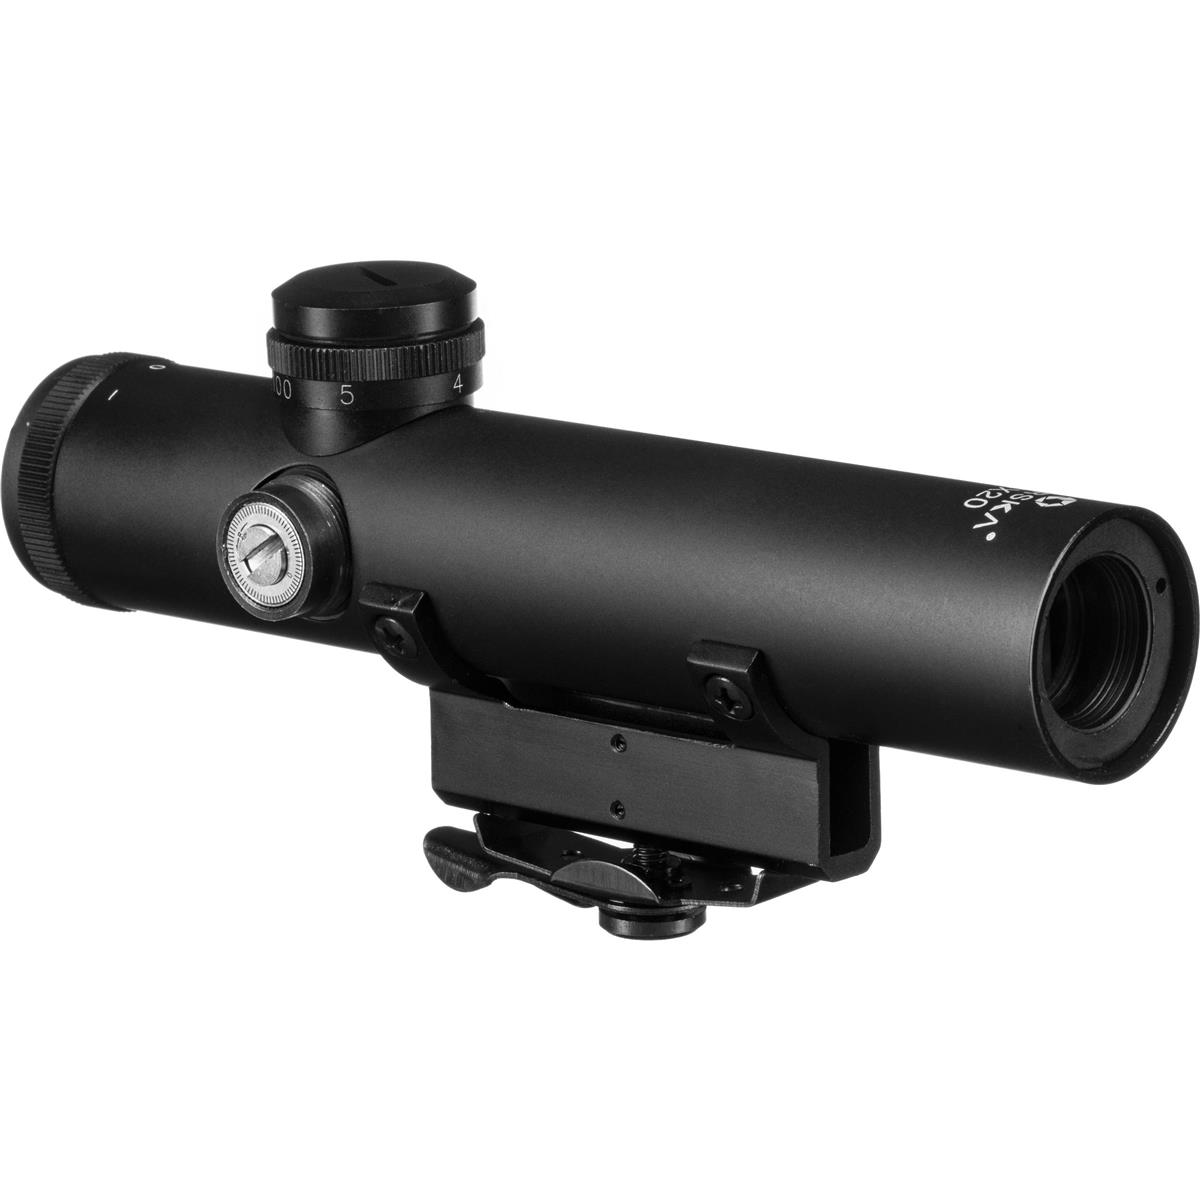 Image of Barska 4x20 Electro Sight Riflescope